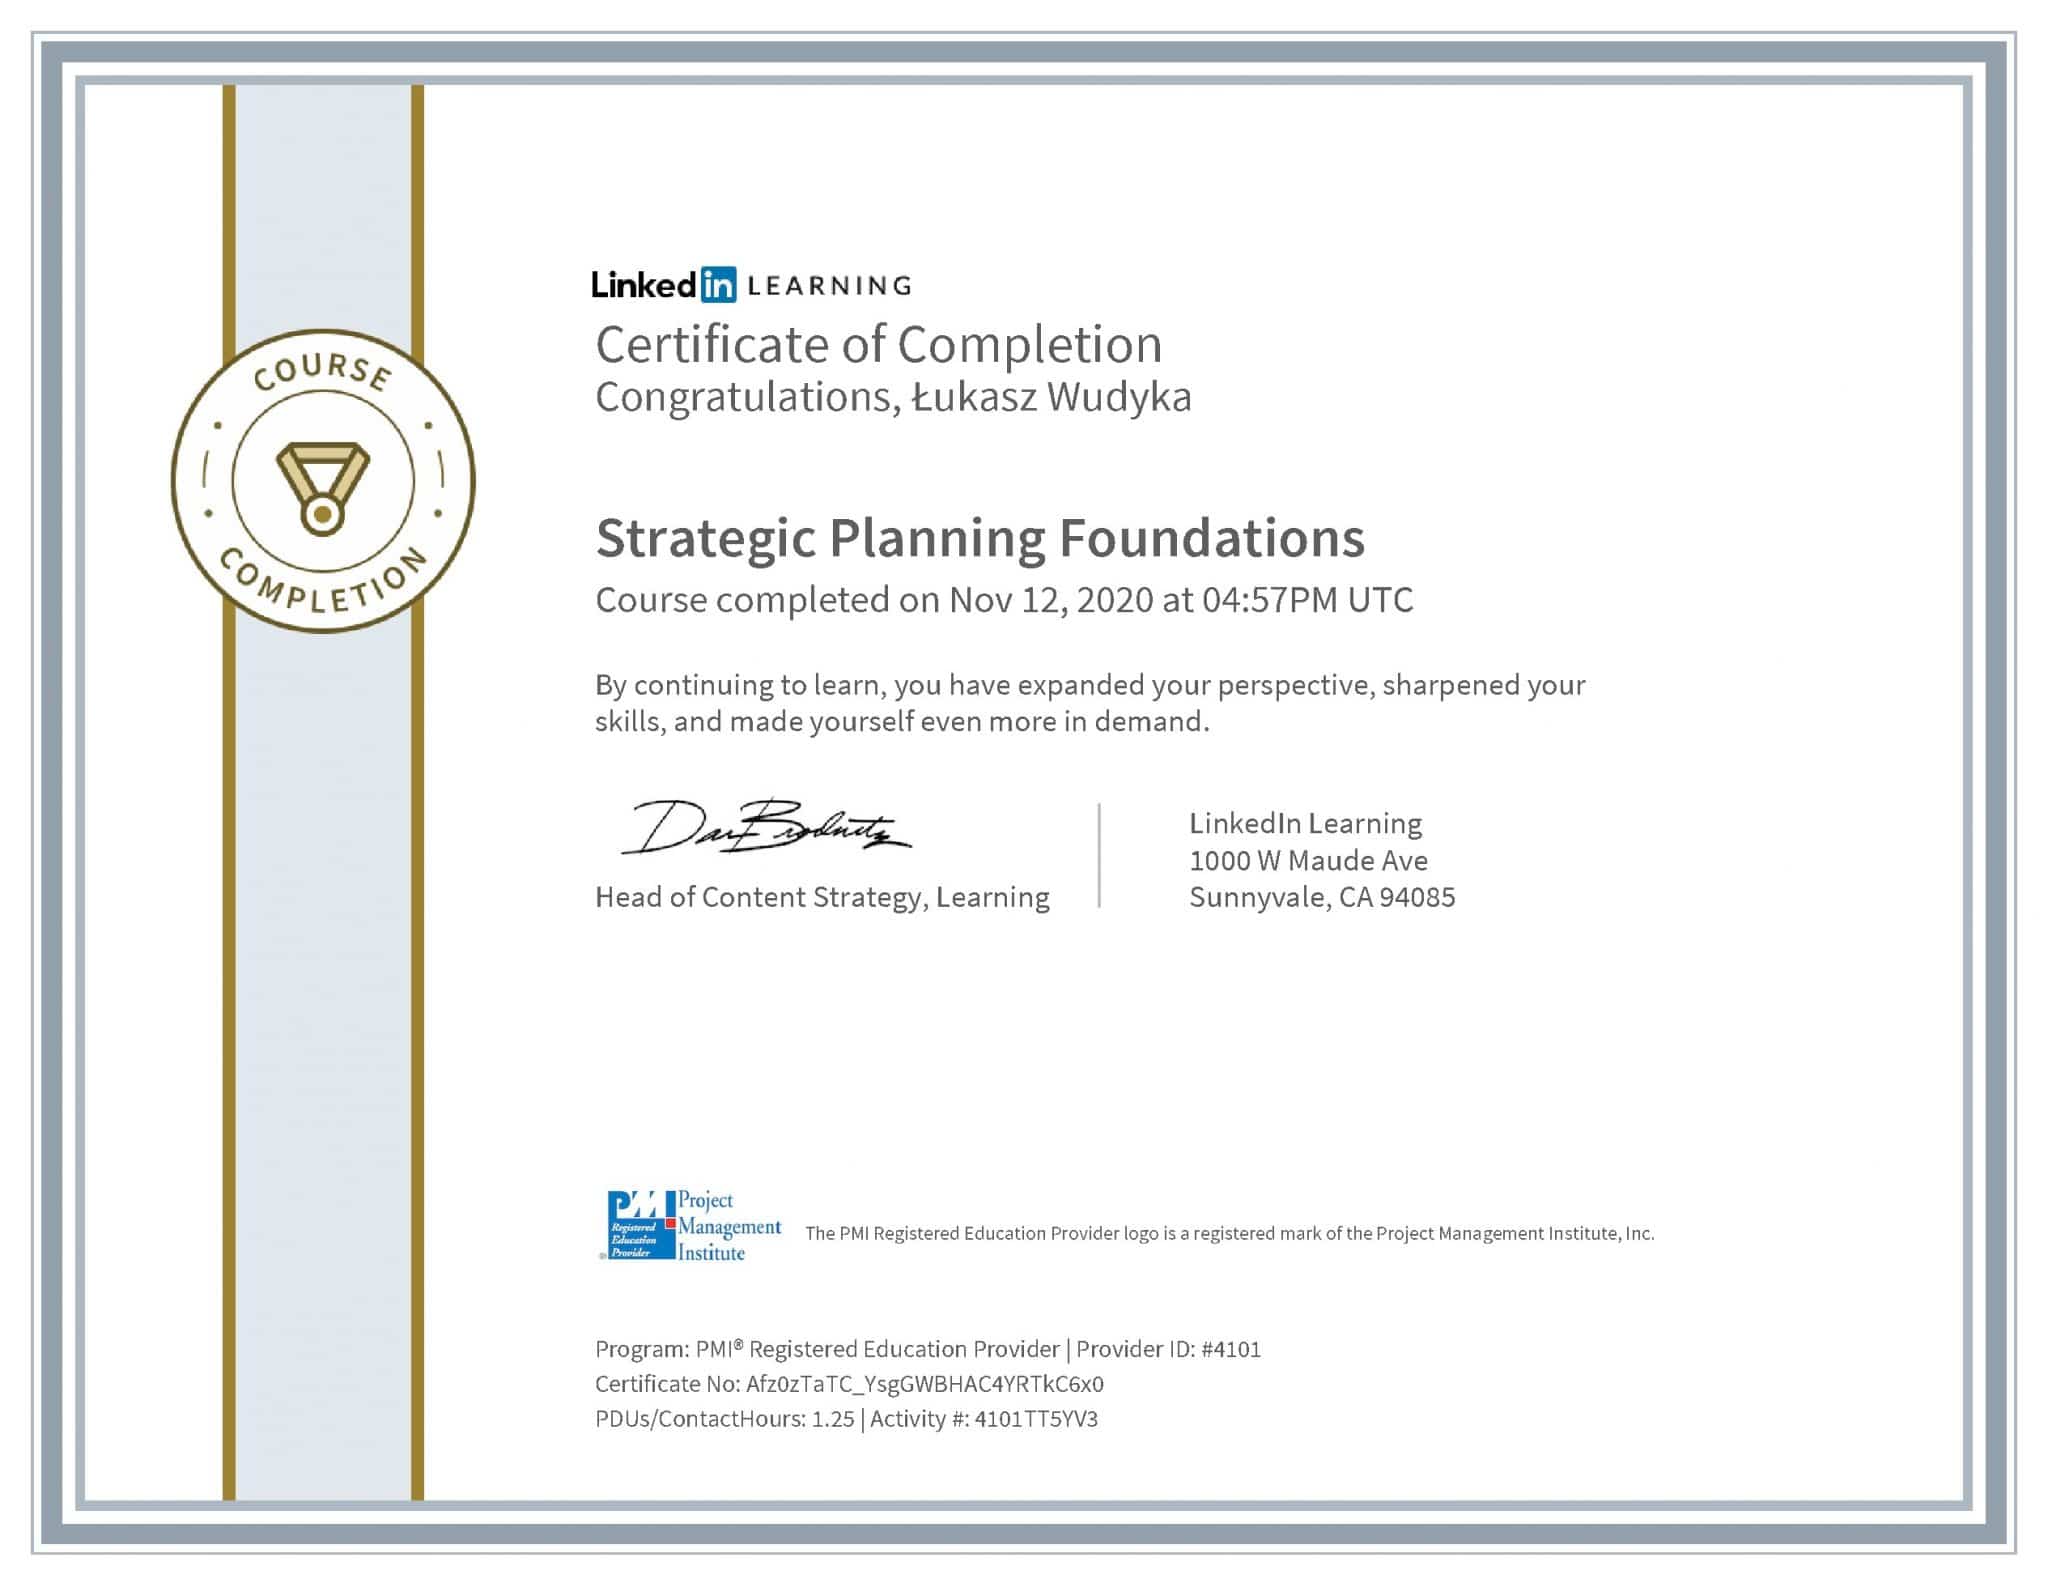 Łukasz Wudyka certyfikat LinkedIn Strategic Planning Foundations PMI